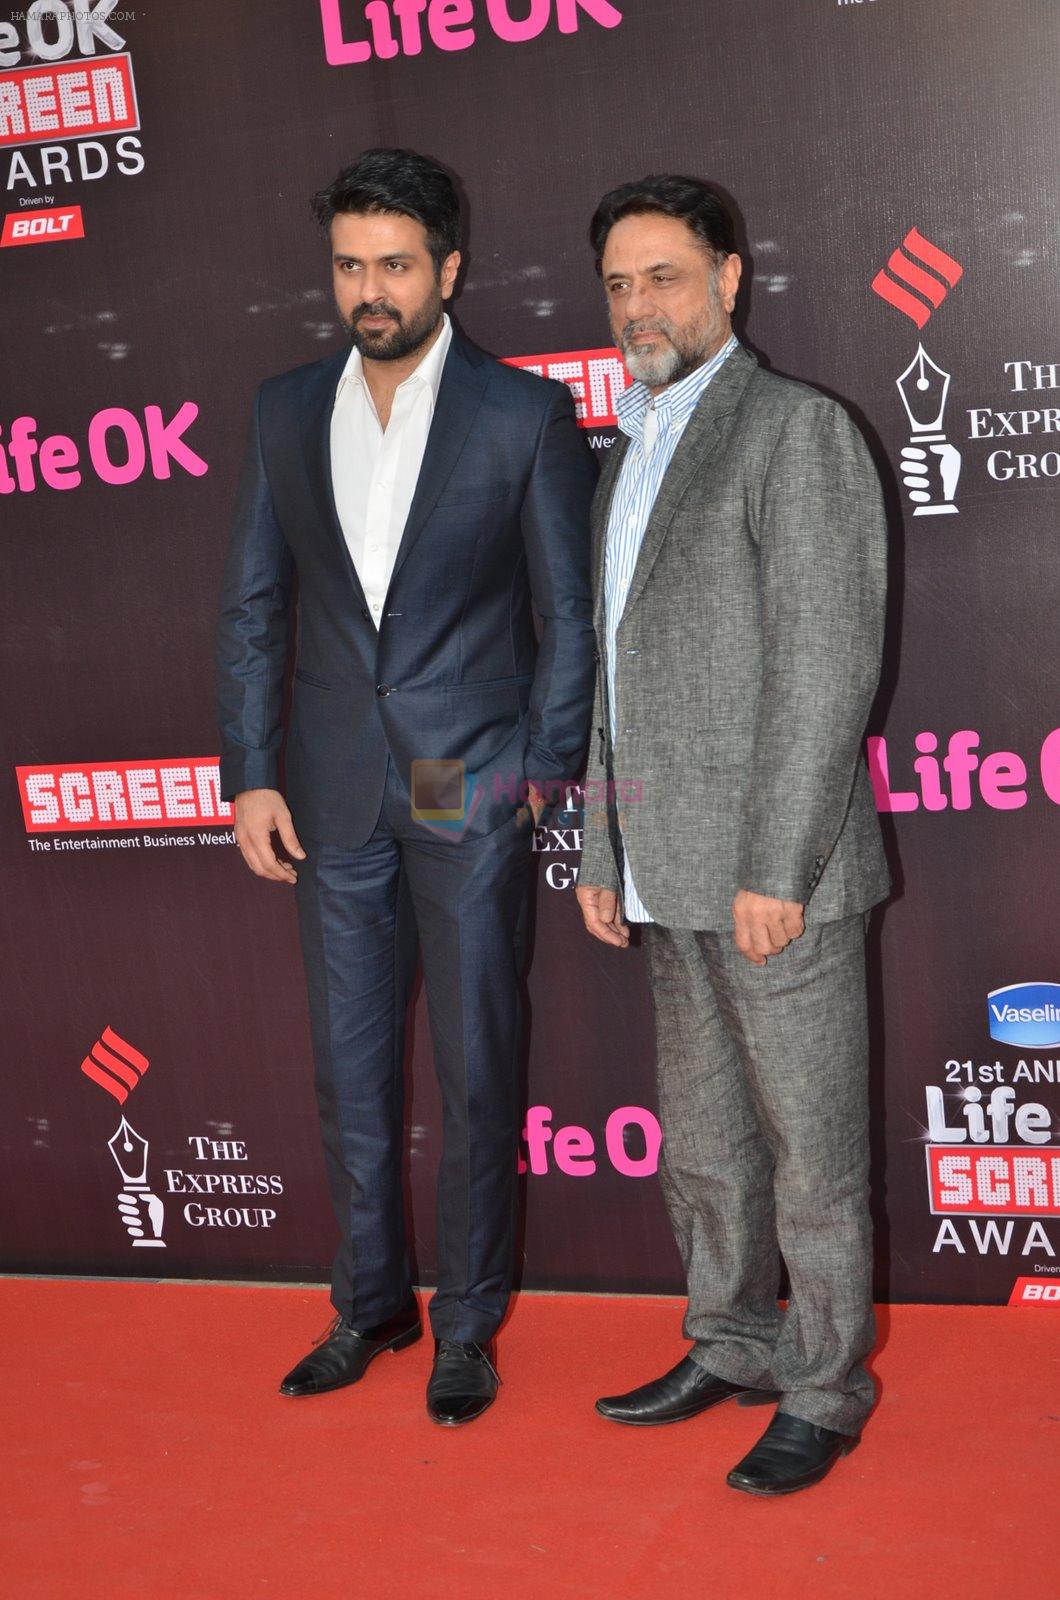 Harman Baweja, Harry Baweja at Life Ok Screen Awards red carpet in Mumbai on 14th Jan 2015